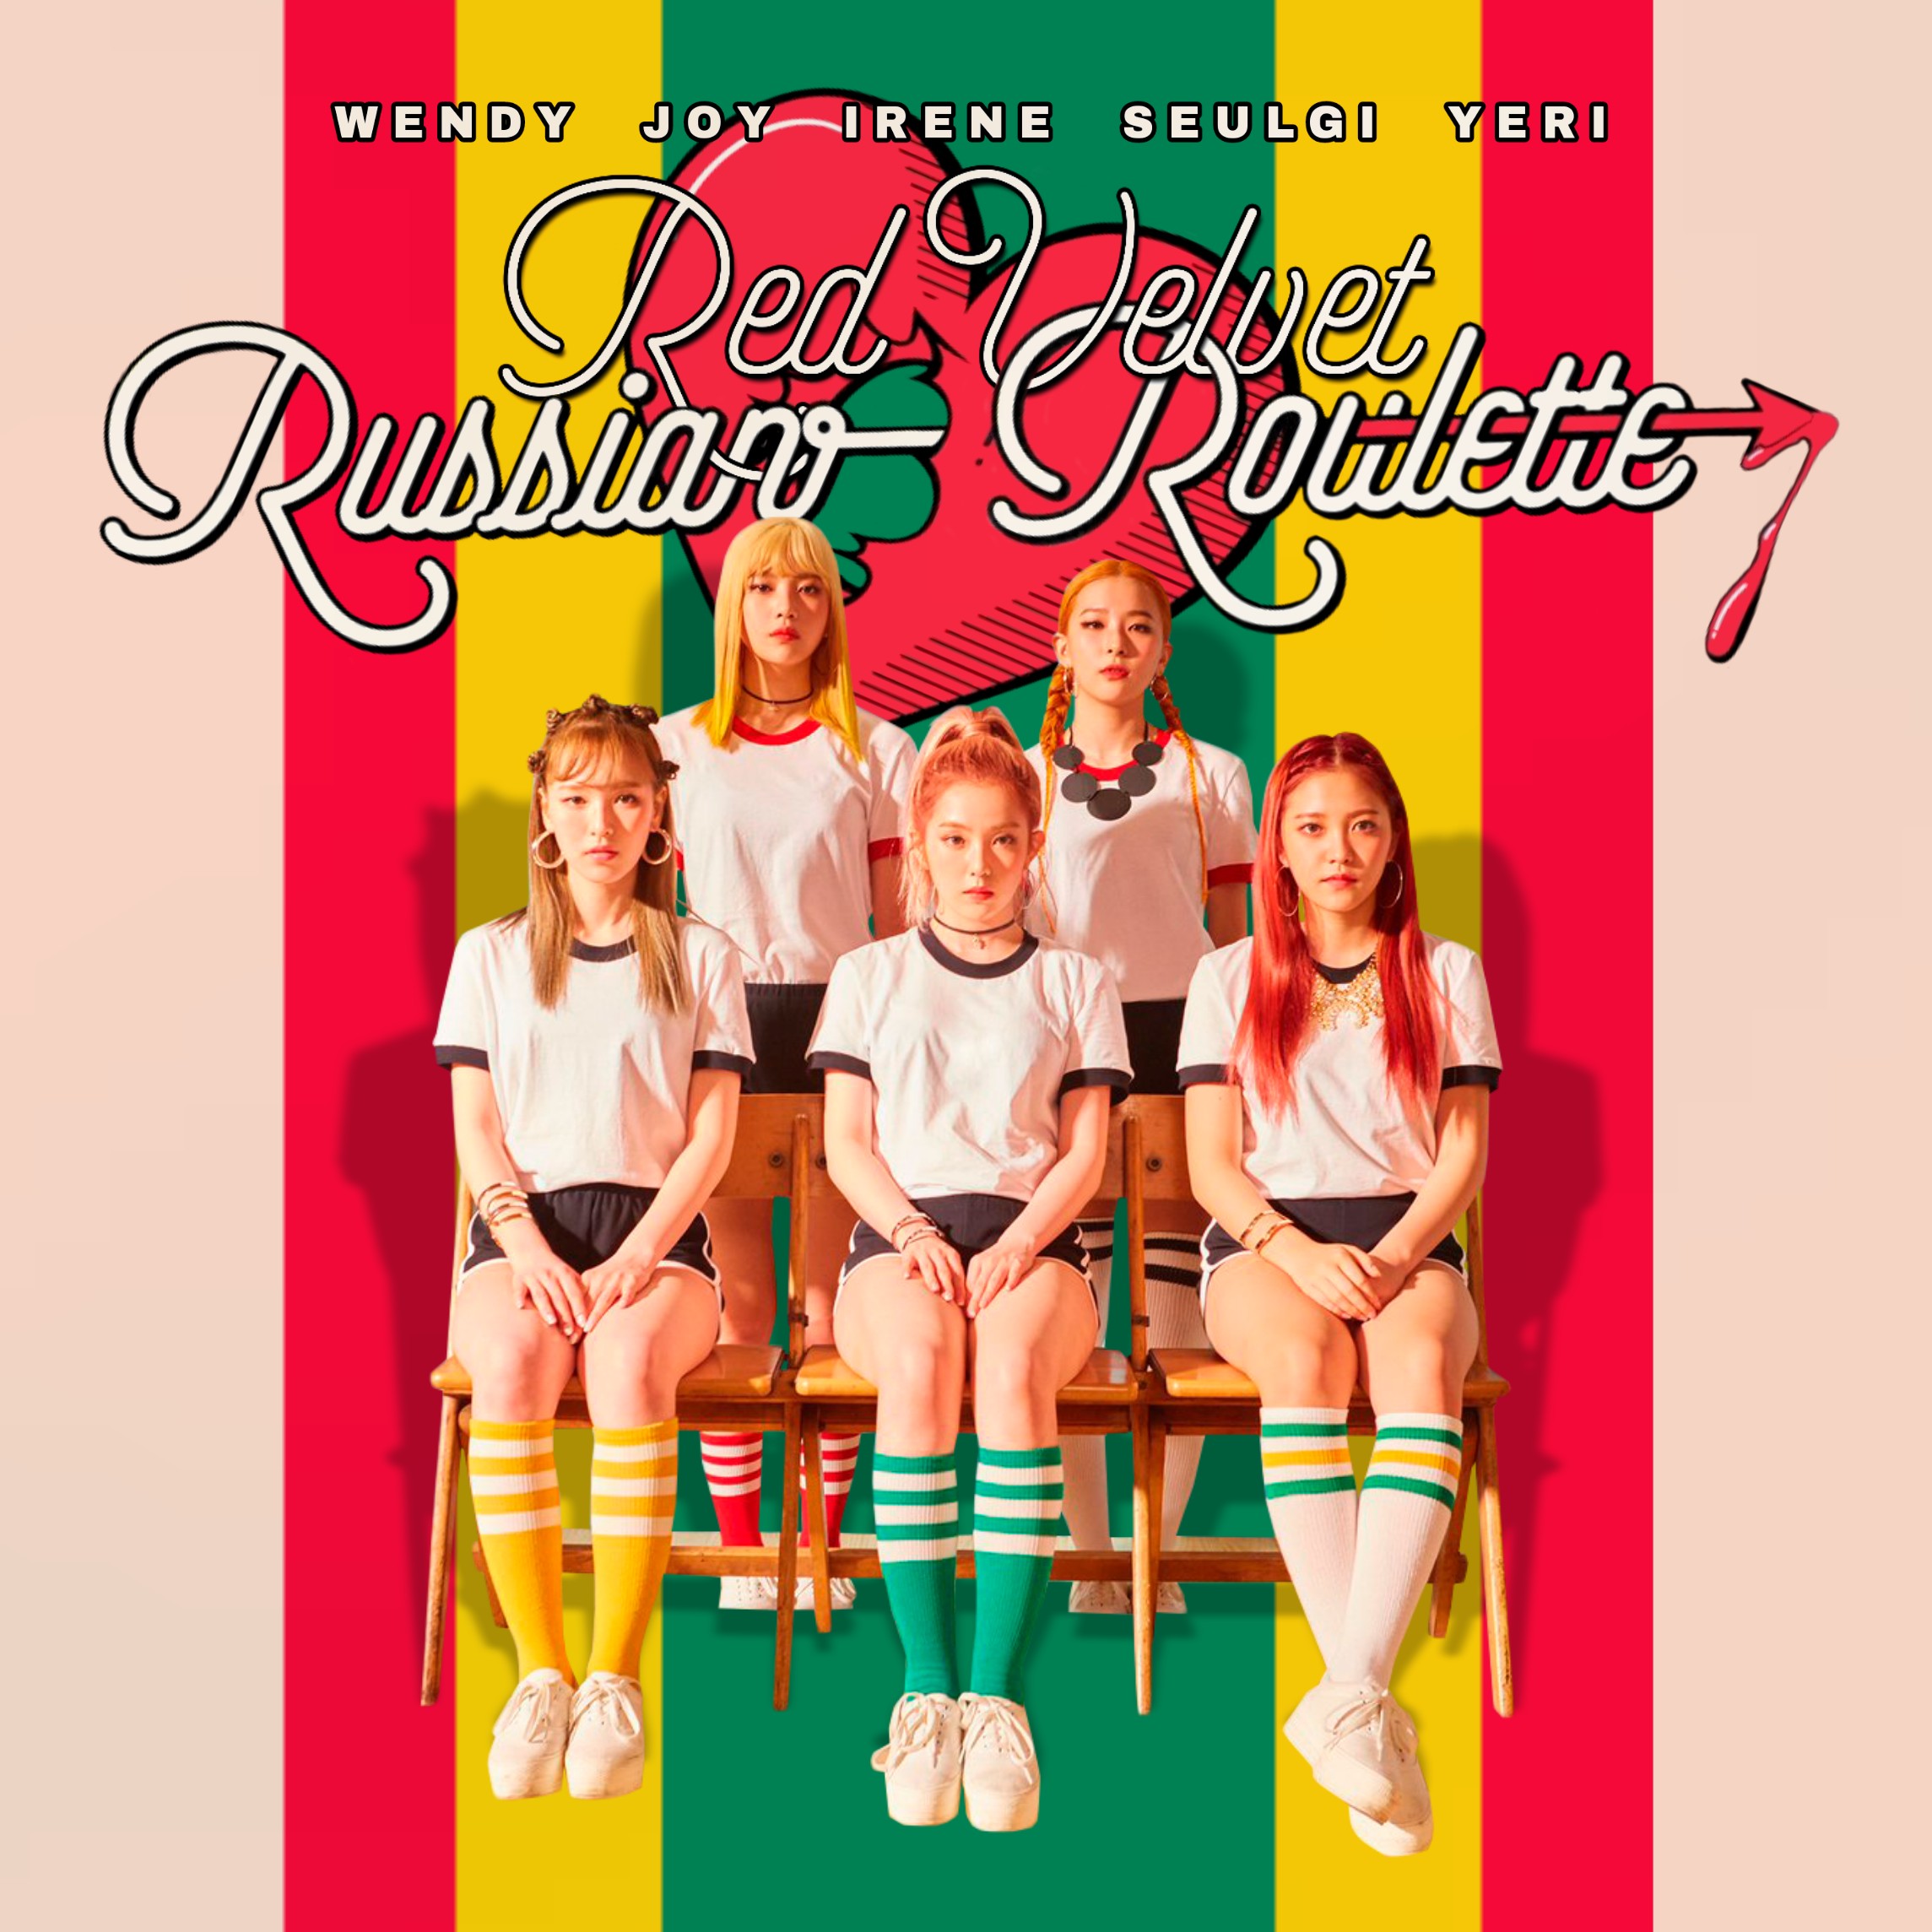 Red Velvet - Russian Roulette (3) by vanessa-van3ss4 on DeviantArt